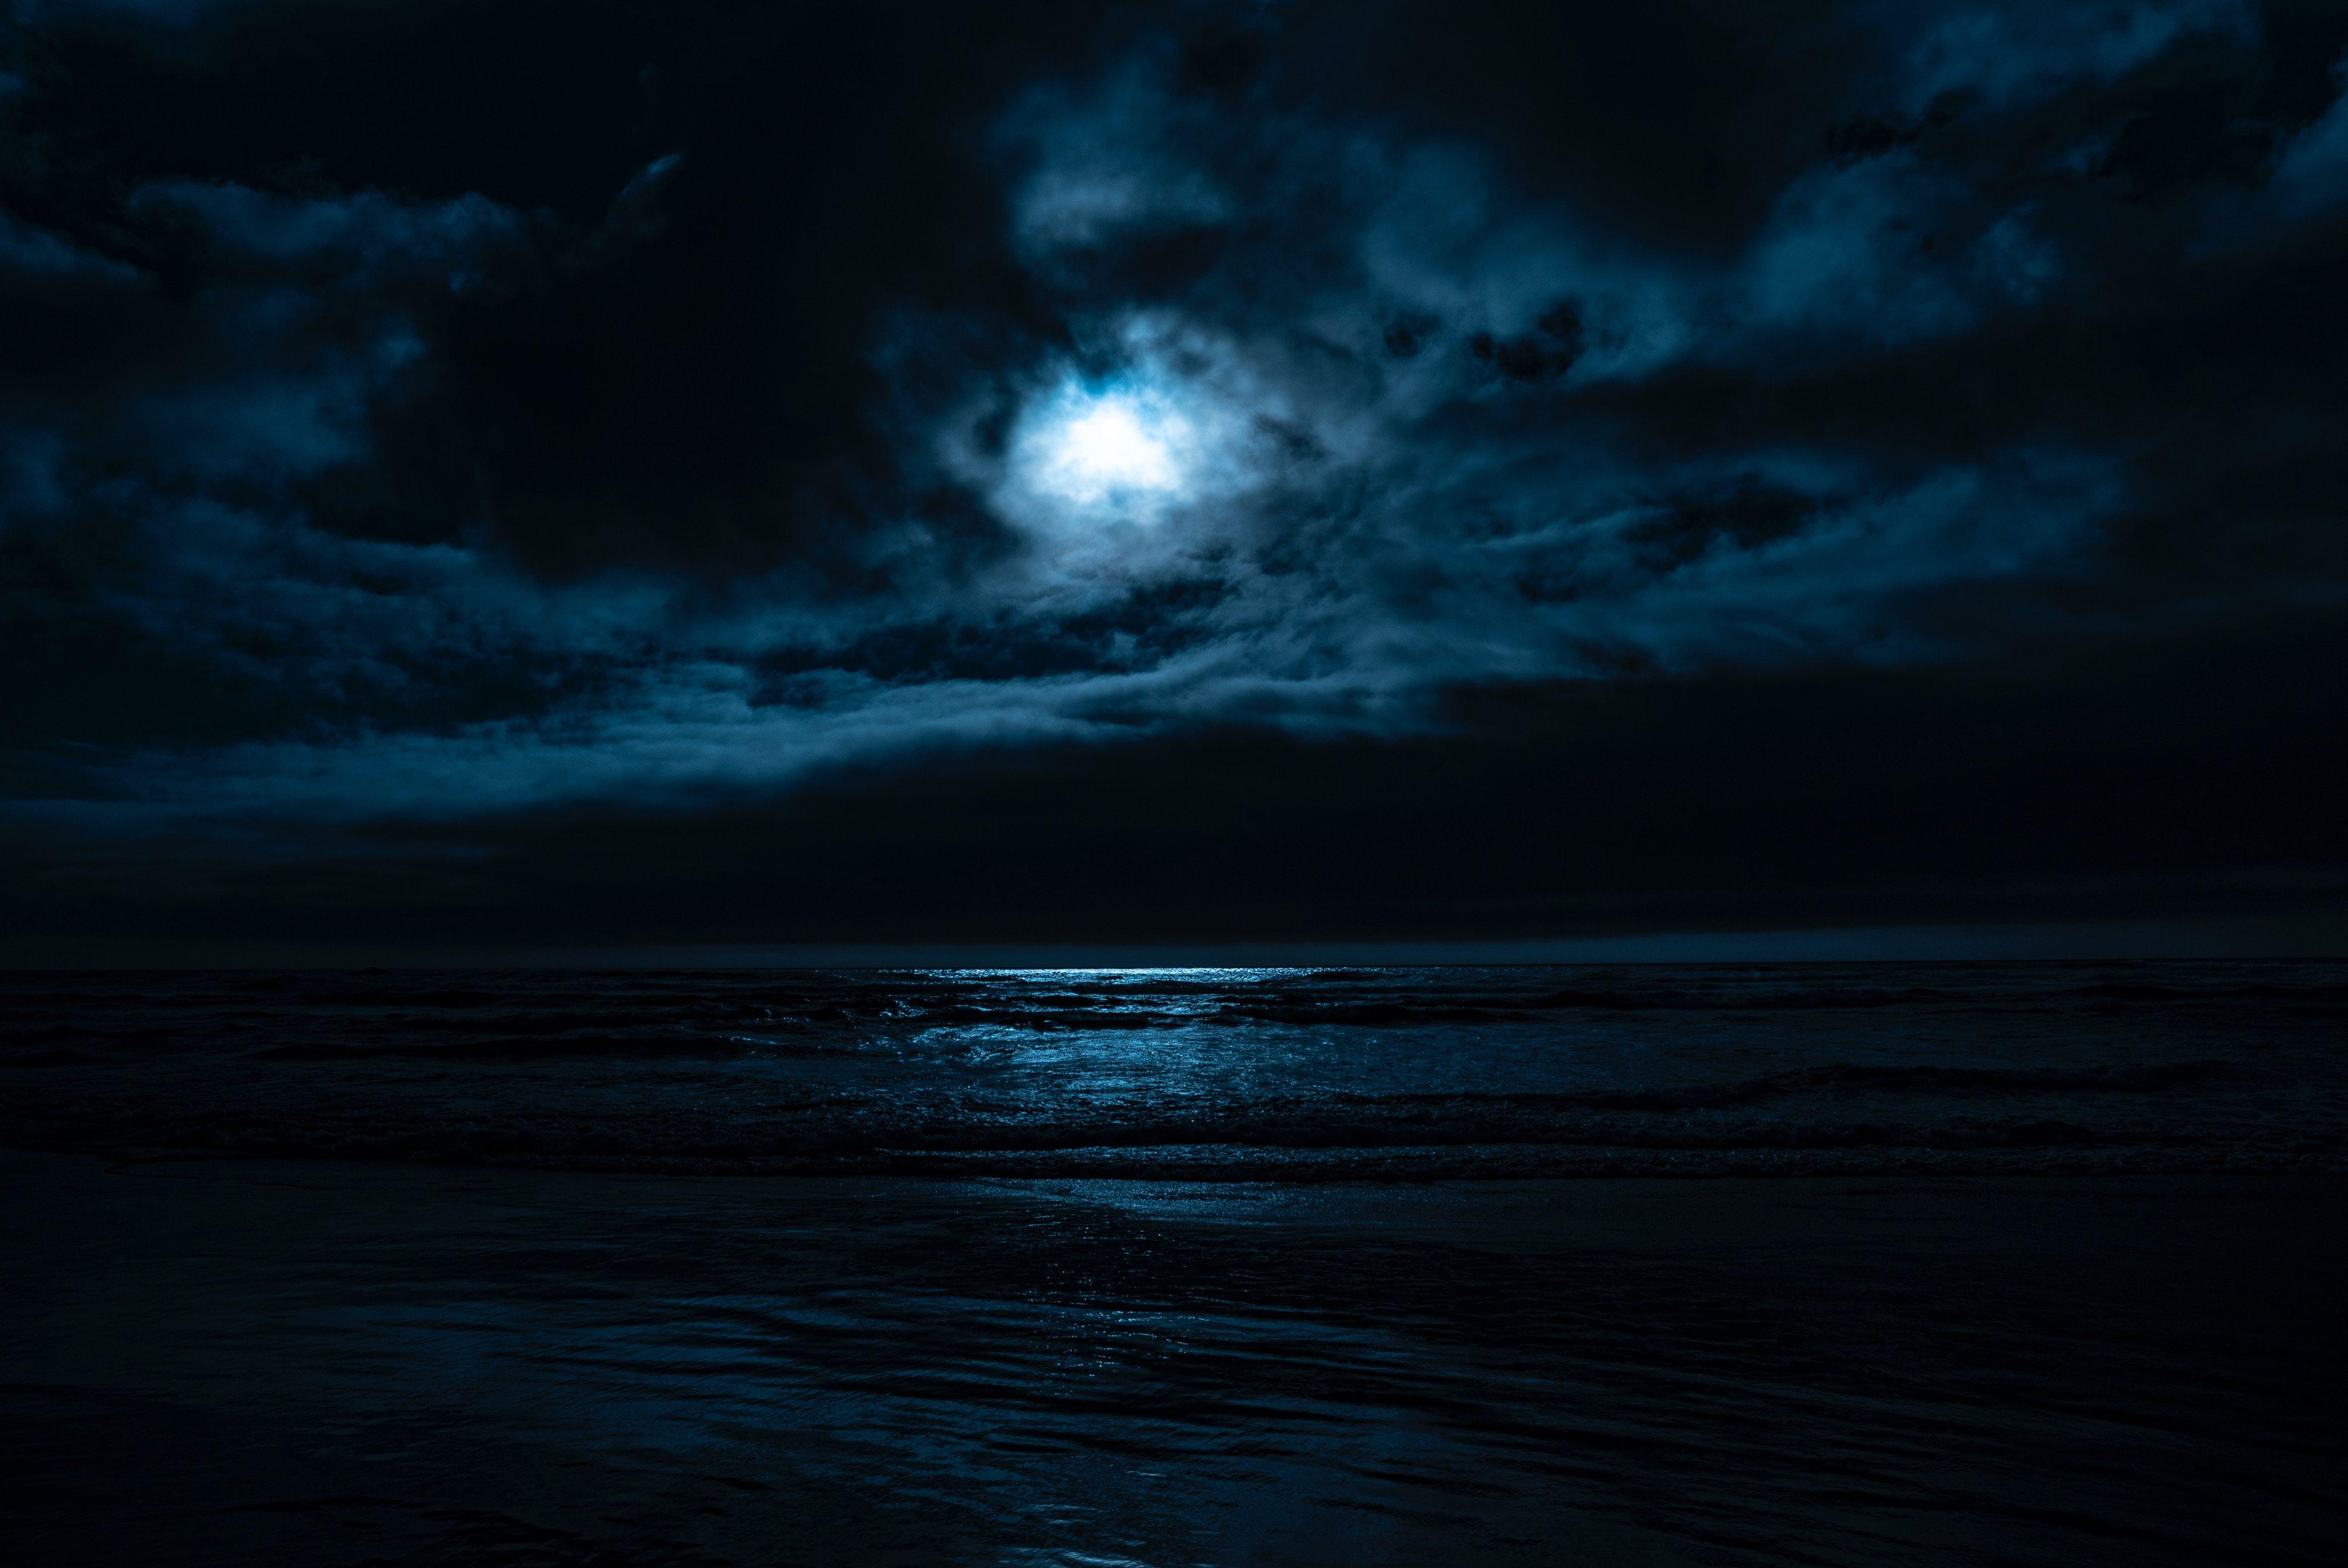 Dark Night Beach Wallpapers - Top Free Dark Night Beach Backgrounds ...